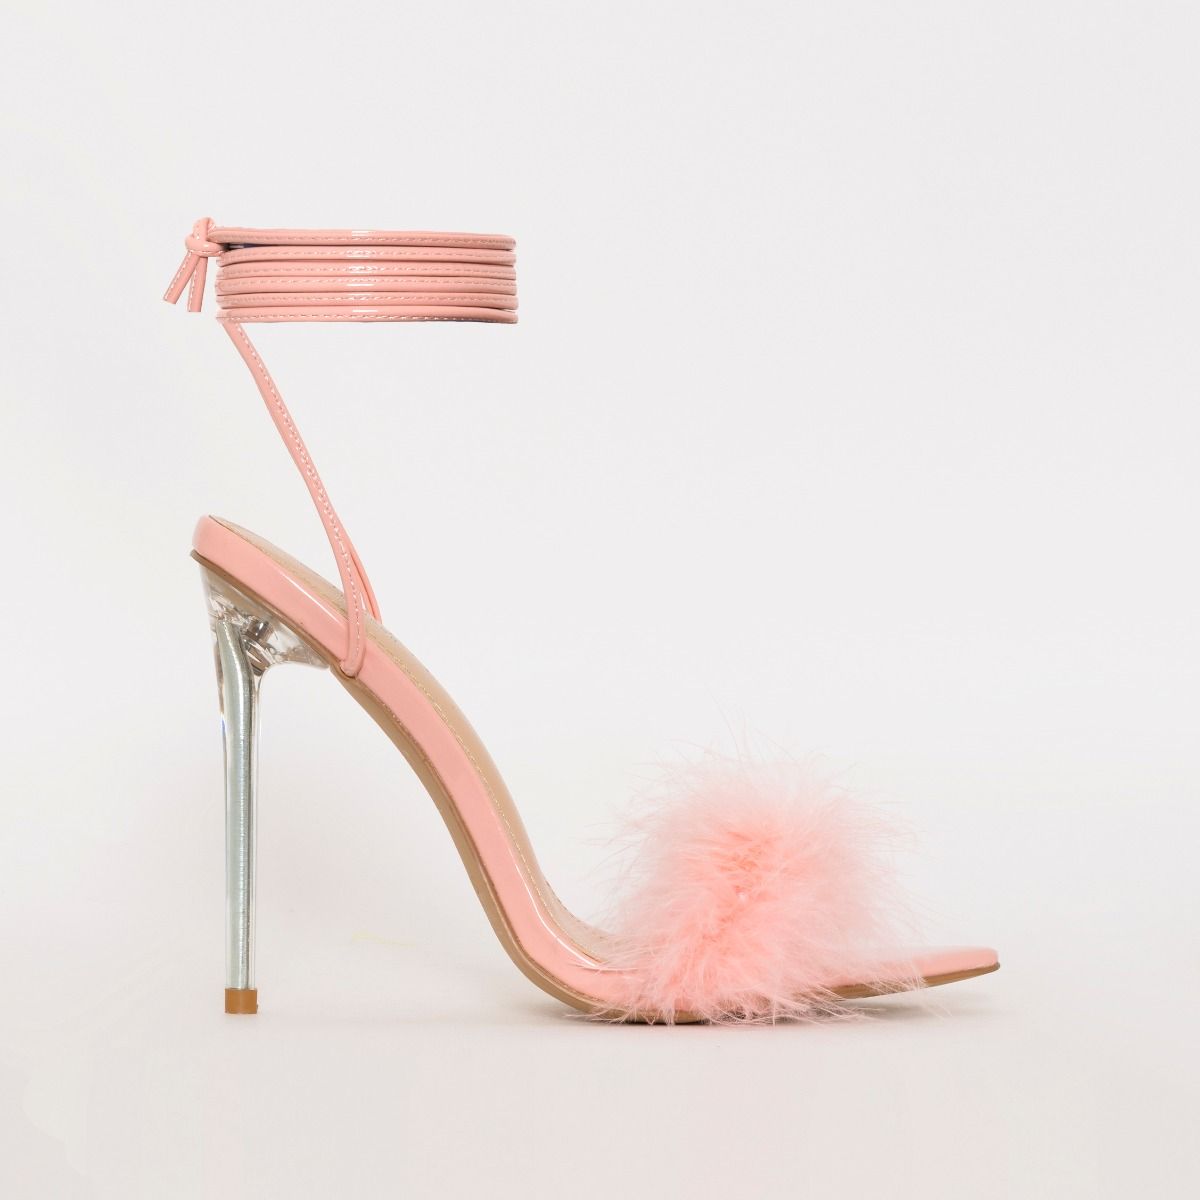 peach pink heels